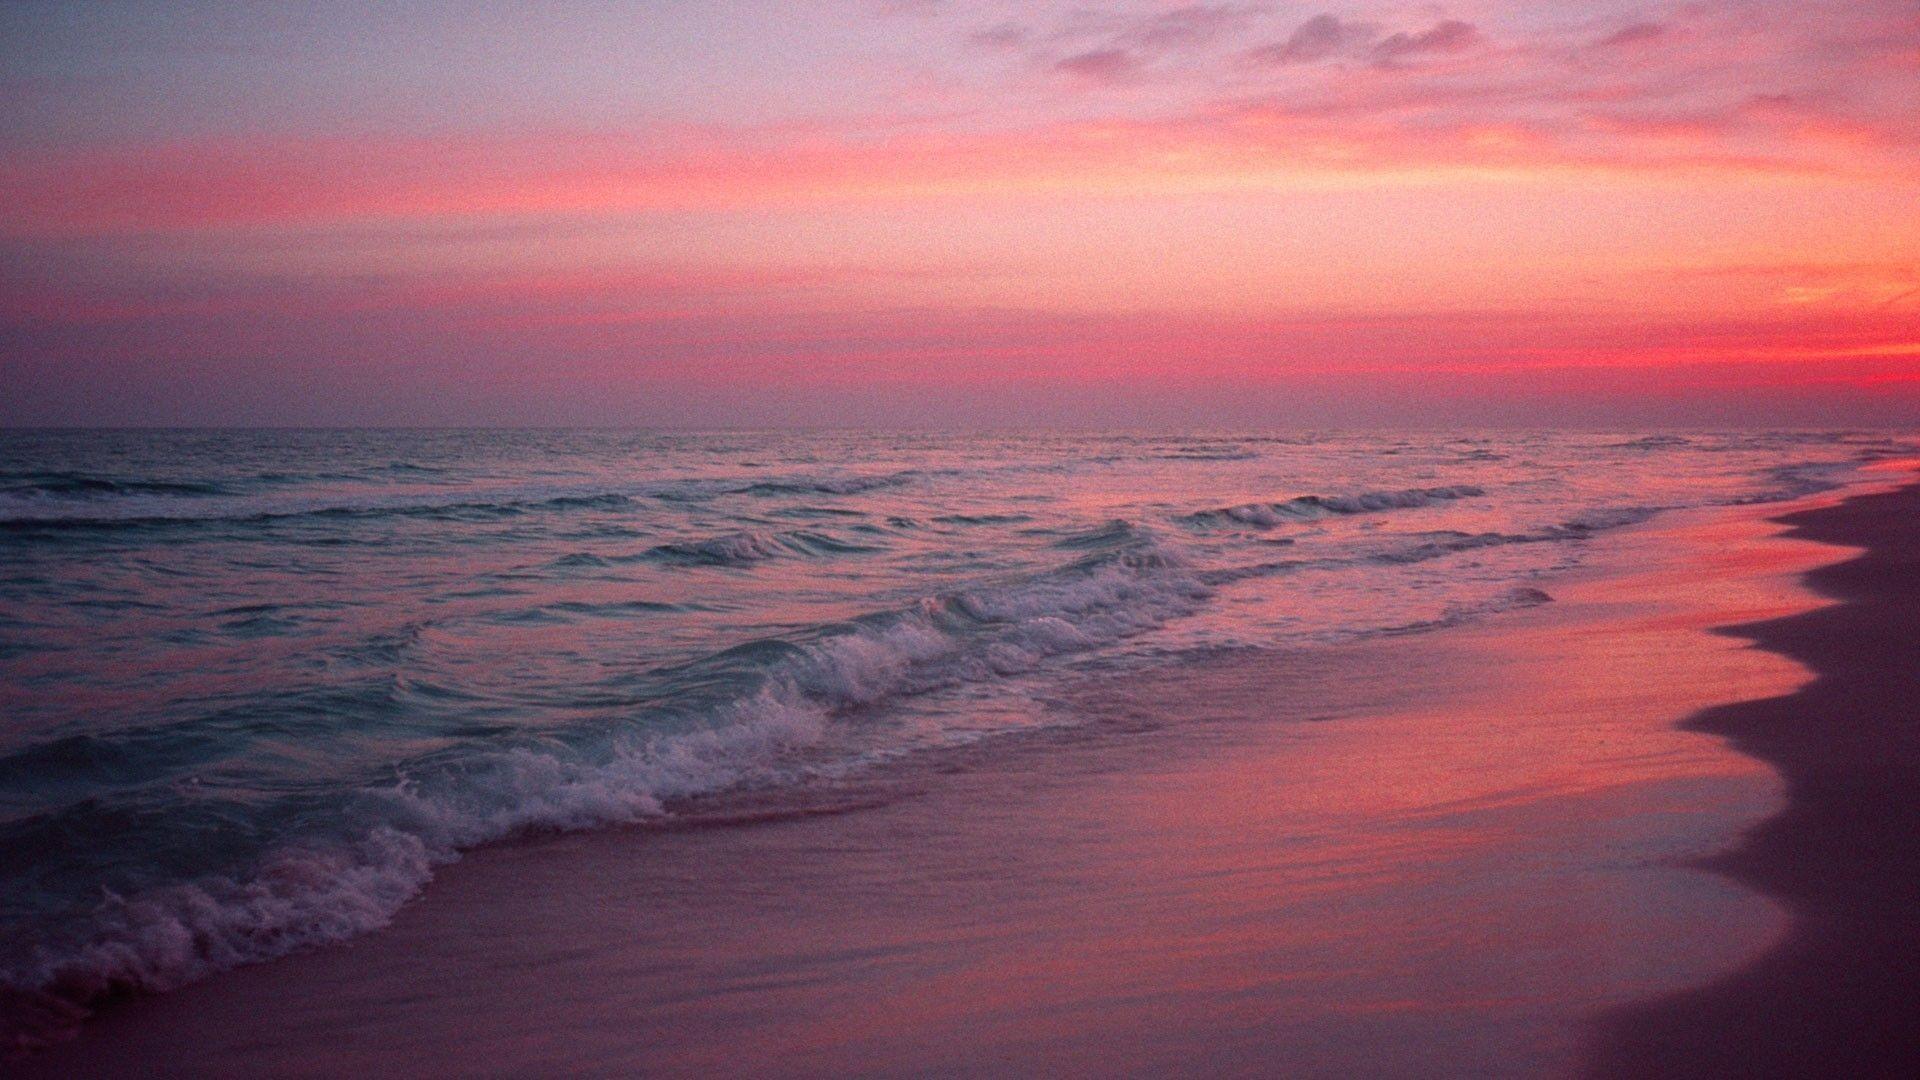 Pink sunset over the ocean wallpaper - Beach